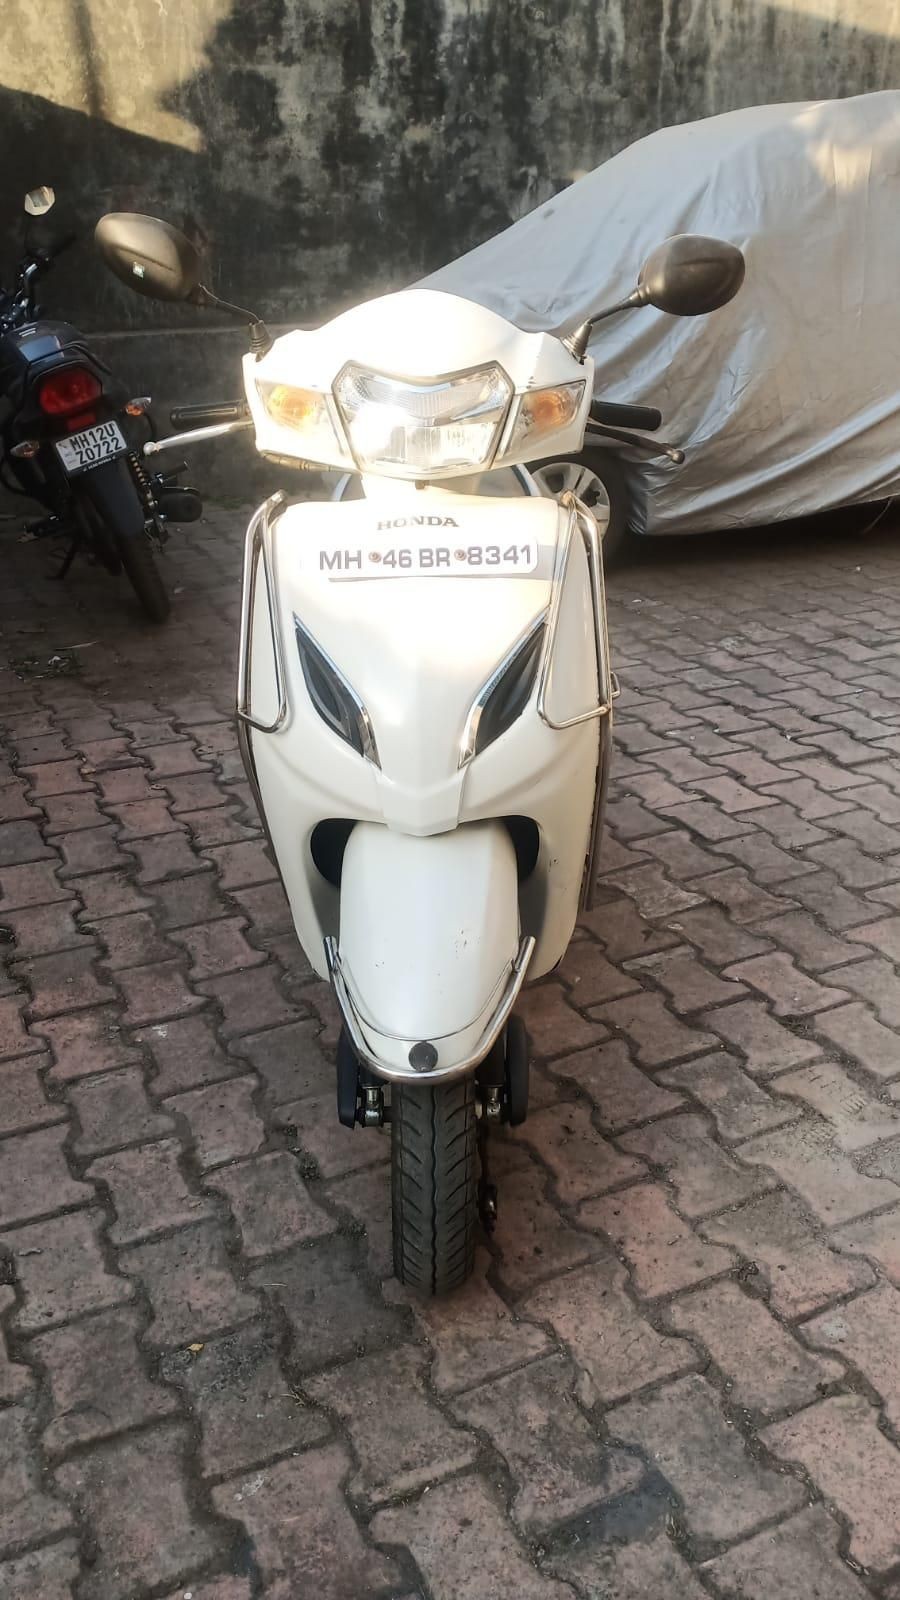 Used Honda Activa 5G 110cc DLX 2019